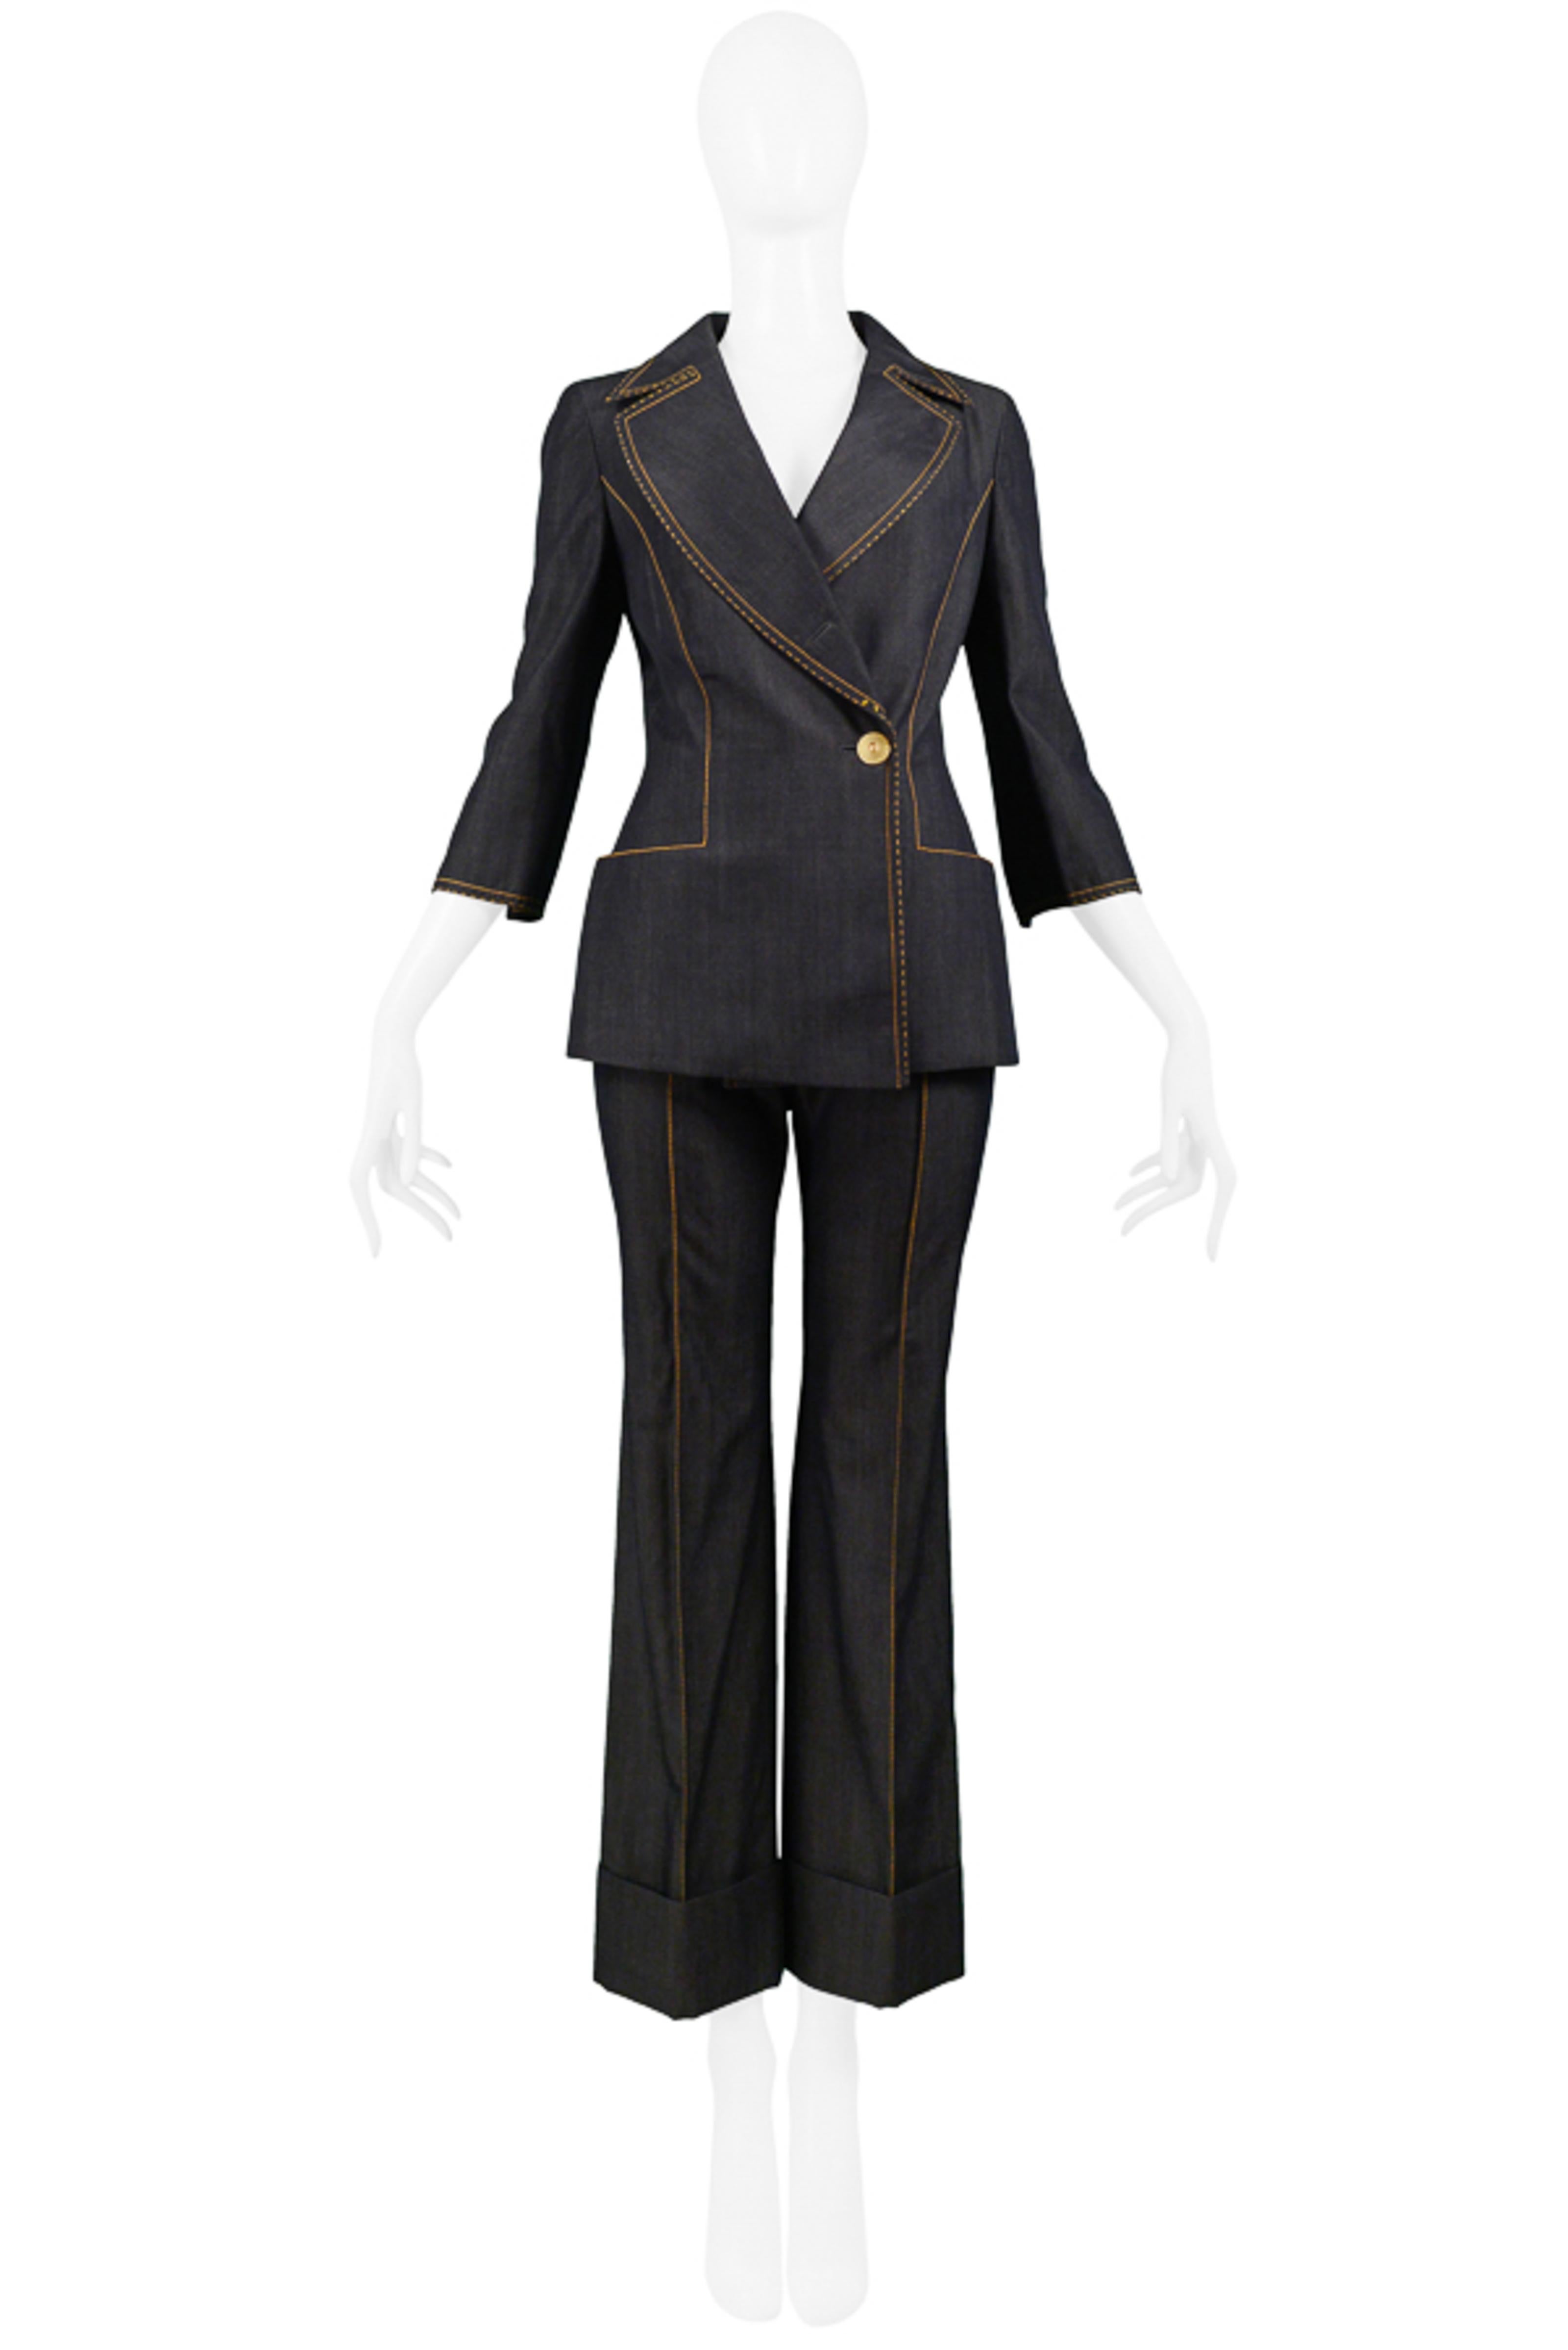 Resurrection Vintage est heureux de proposer un costume vintage Gianfranco Ferre inspiré du denim, avec un tissu en laine gris anthracite, des coutures jaunes contrastantes, un blazer ajusté avec une fermeture à boutons asymétrique, des manches 3/4,